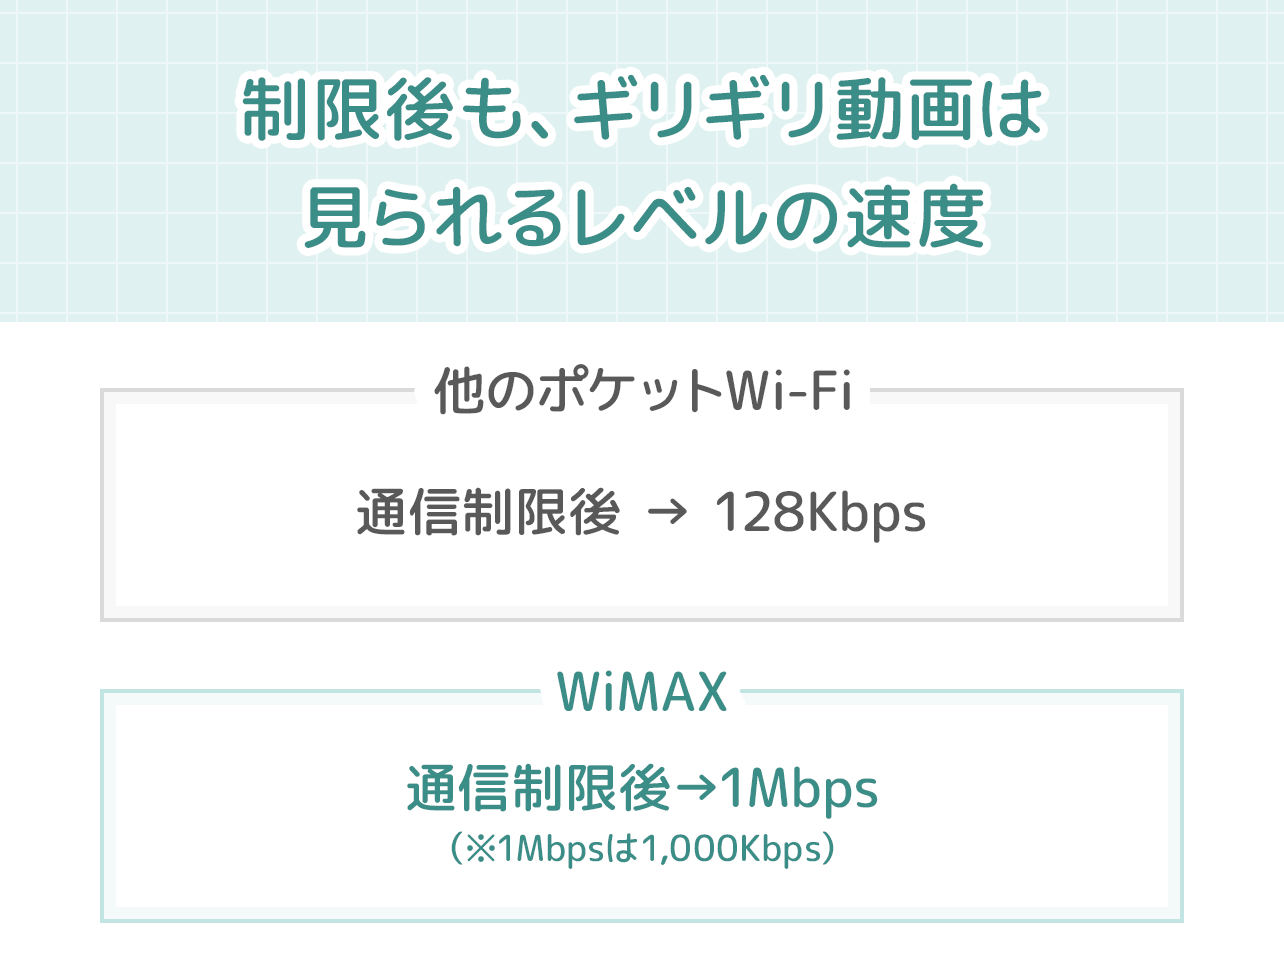 WiMAXは通信制限後の速度でも動画を見られる